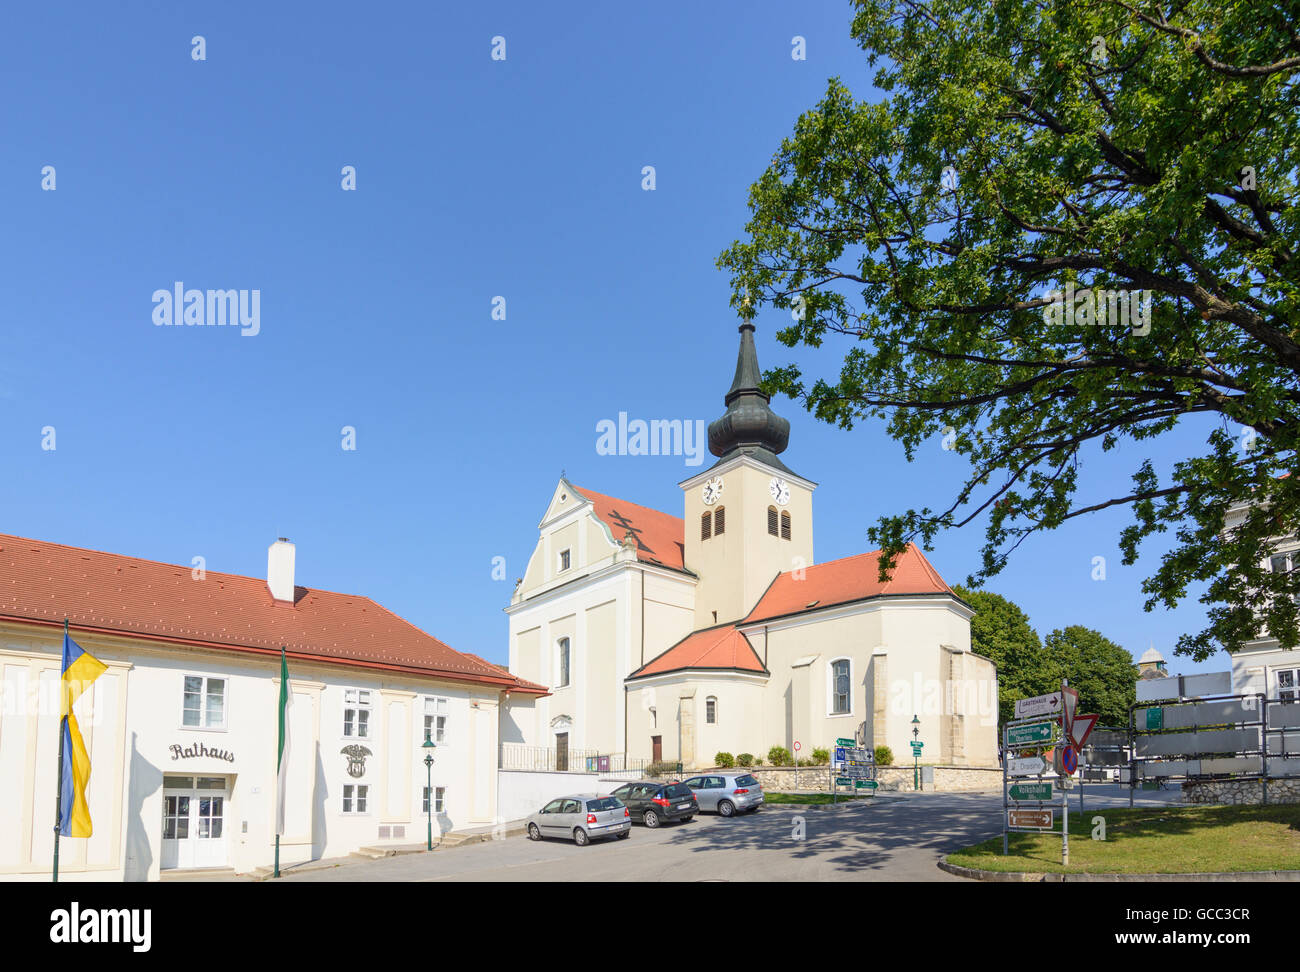 Ernstbrunn market square, church, town hall Austria Niederösterreich, Lower Austria Weinviertel Stock Photo